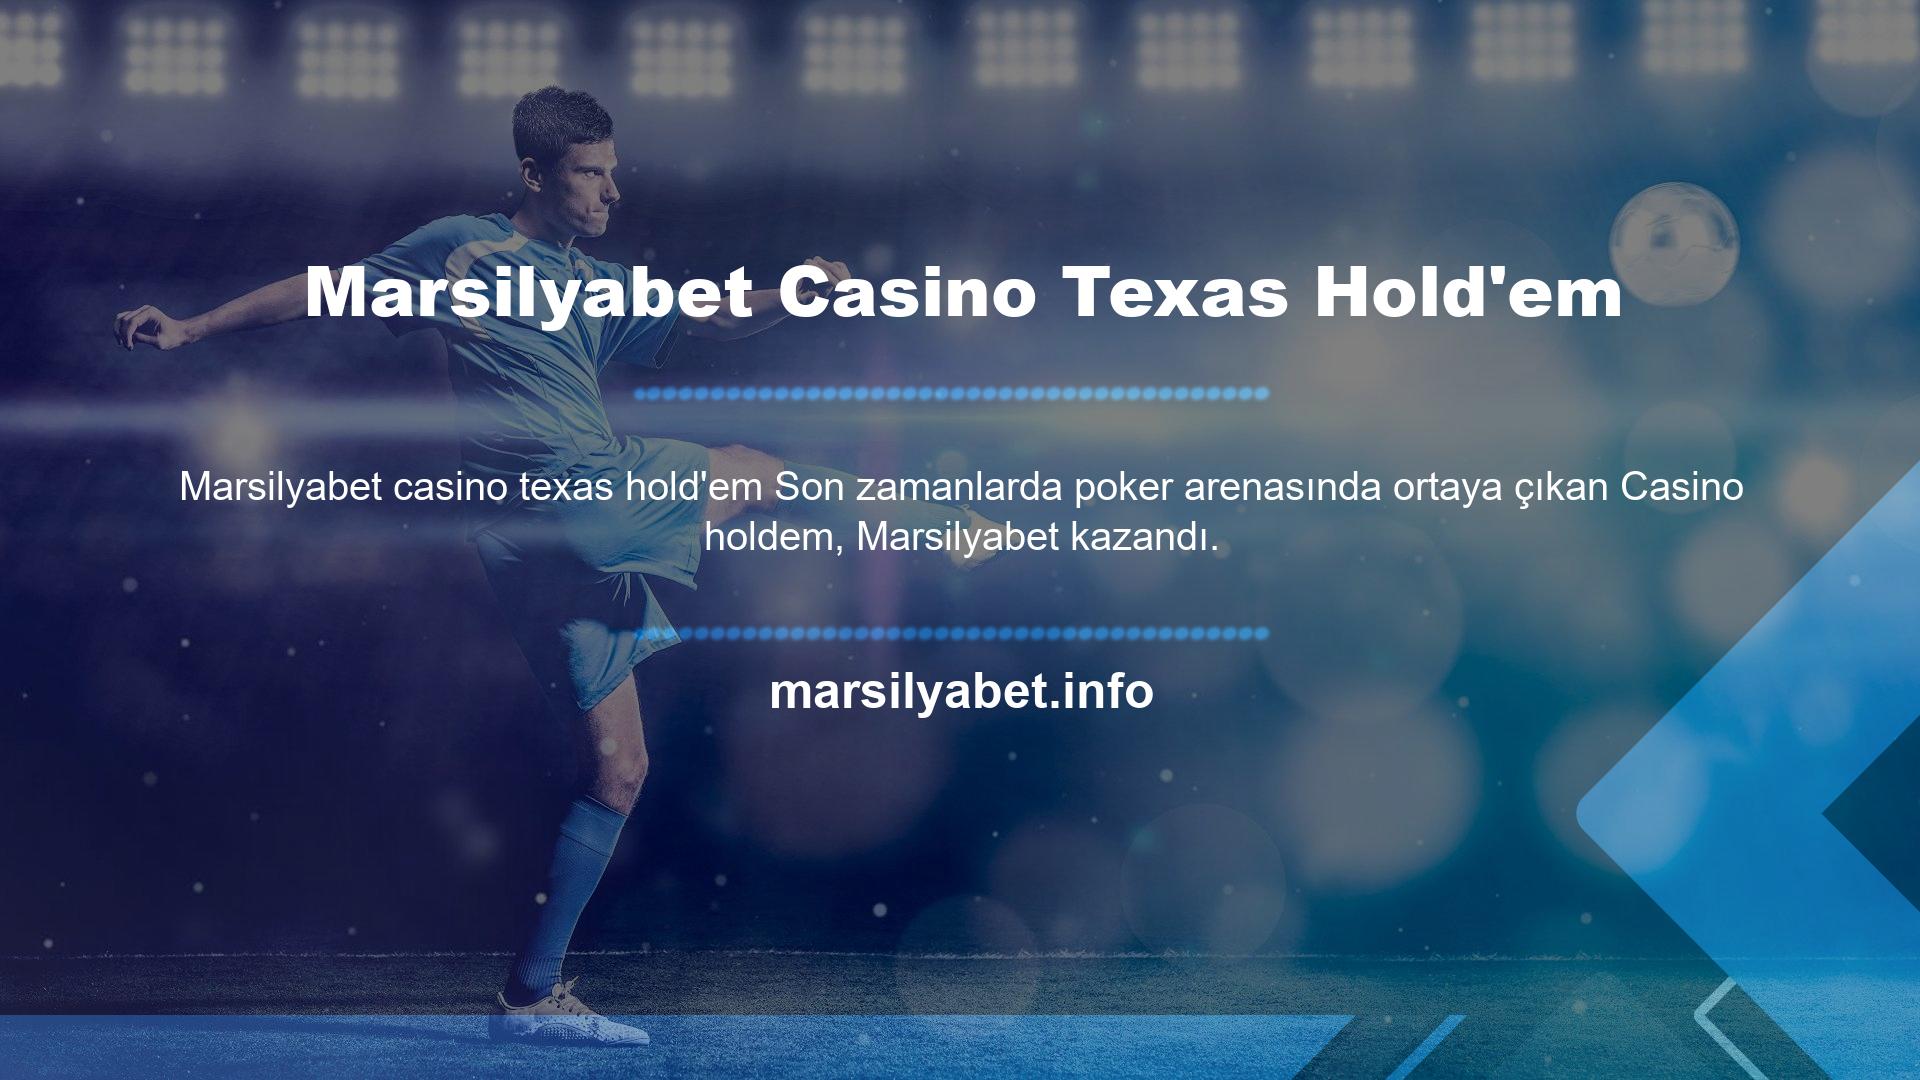 Marsilyabet üye olun ve online casino sektörünün en ünlü oyunlarından biri olan Texas Hold'em (poker) oyununda kazanın